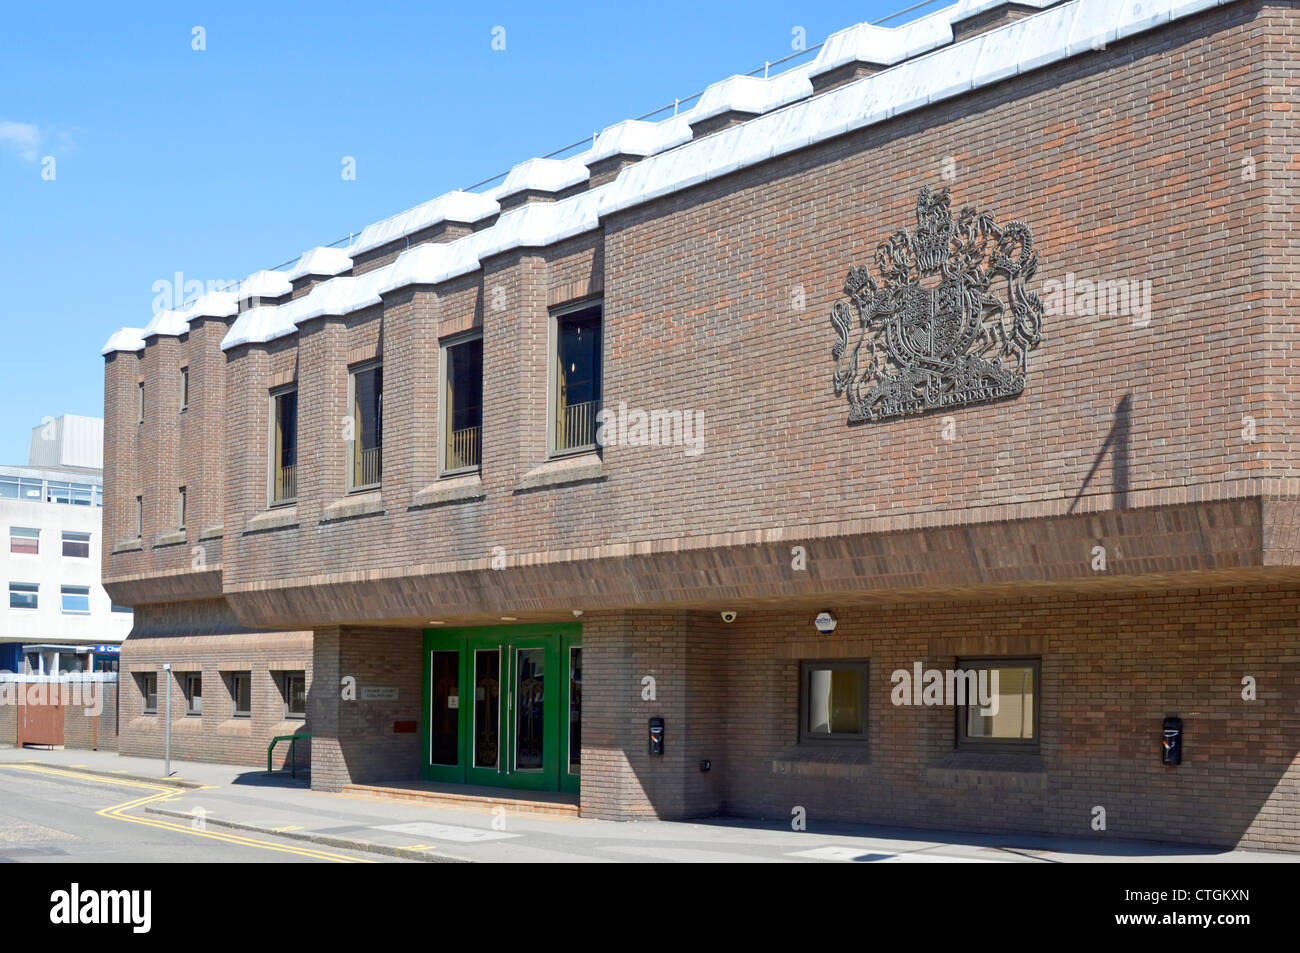 Chelmsford Crown Court königlichen Wappen des Vereinigten Königreichs auf der Außenwand des Courthouse Gebäude Stockfoto